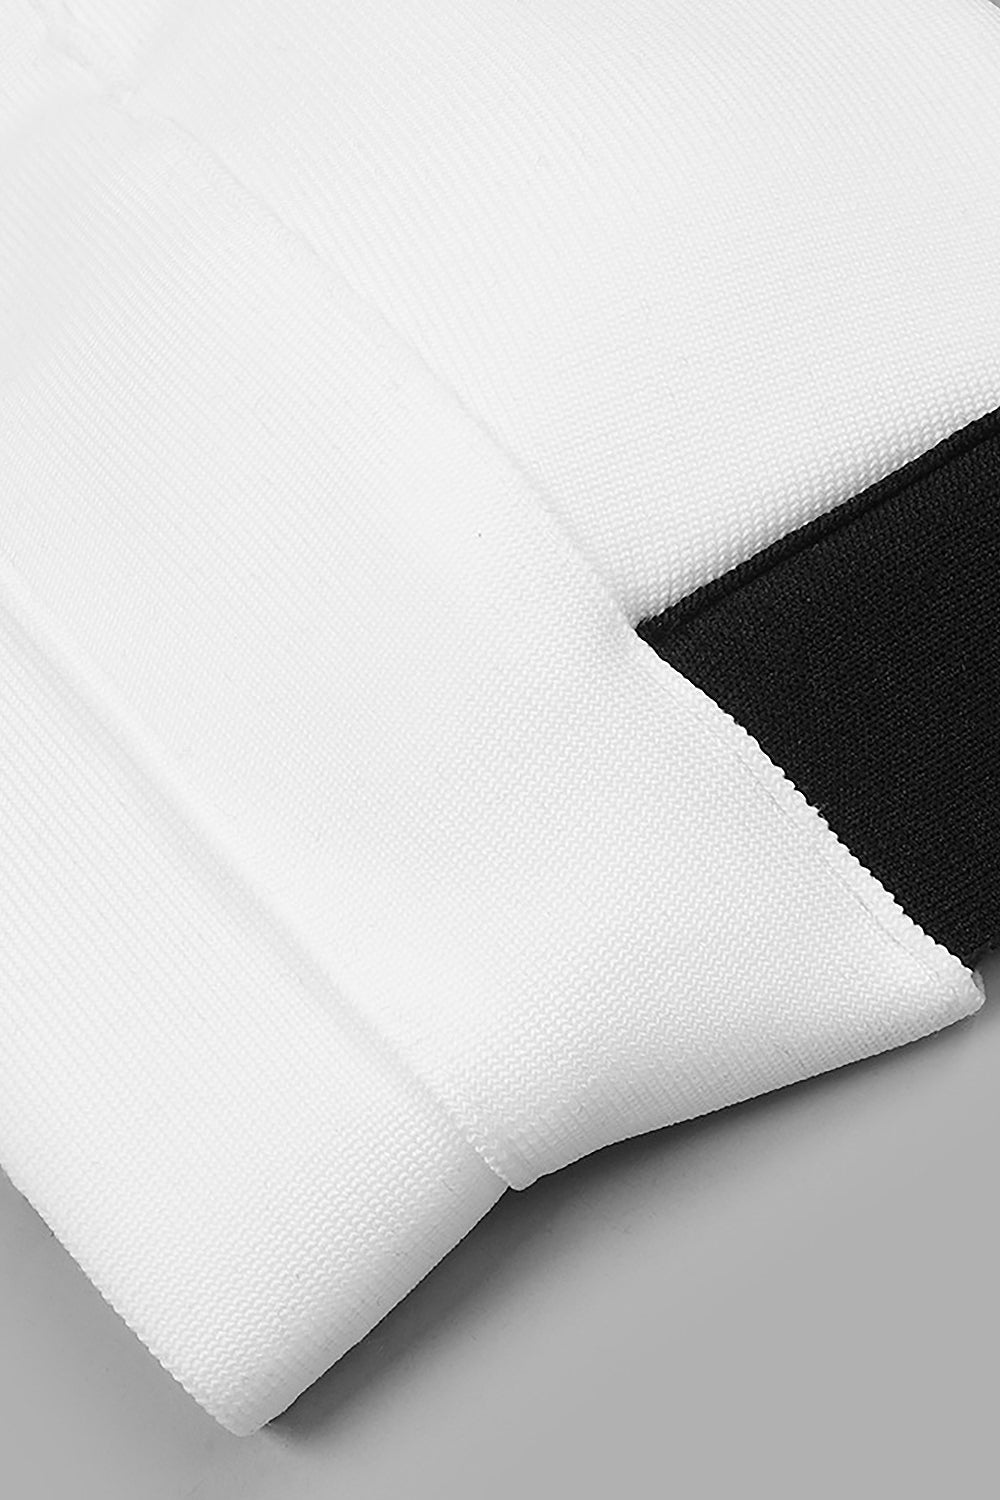 Conjunto de dos piezas con pantalones ajustados negros y tirantes cruzados con camisola blanca